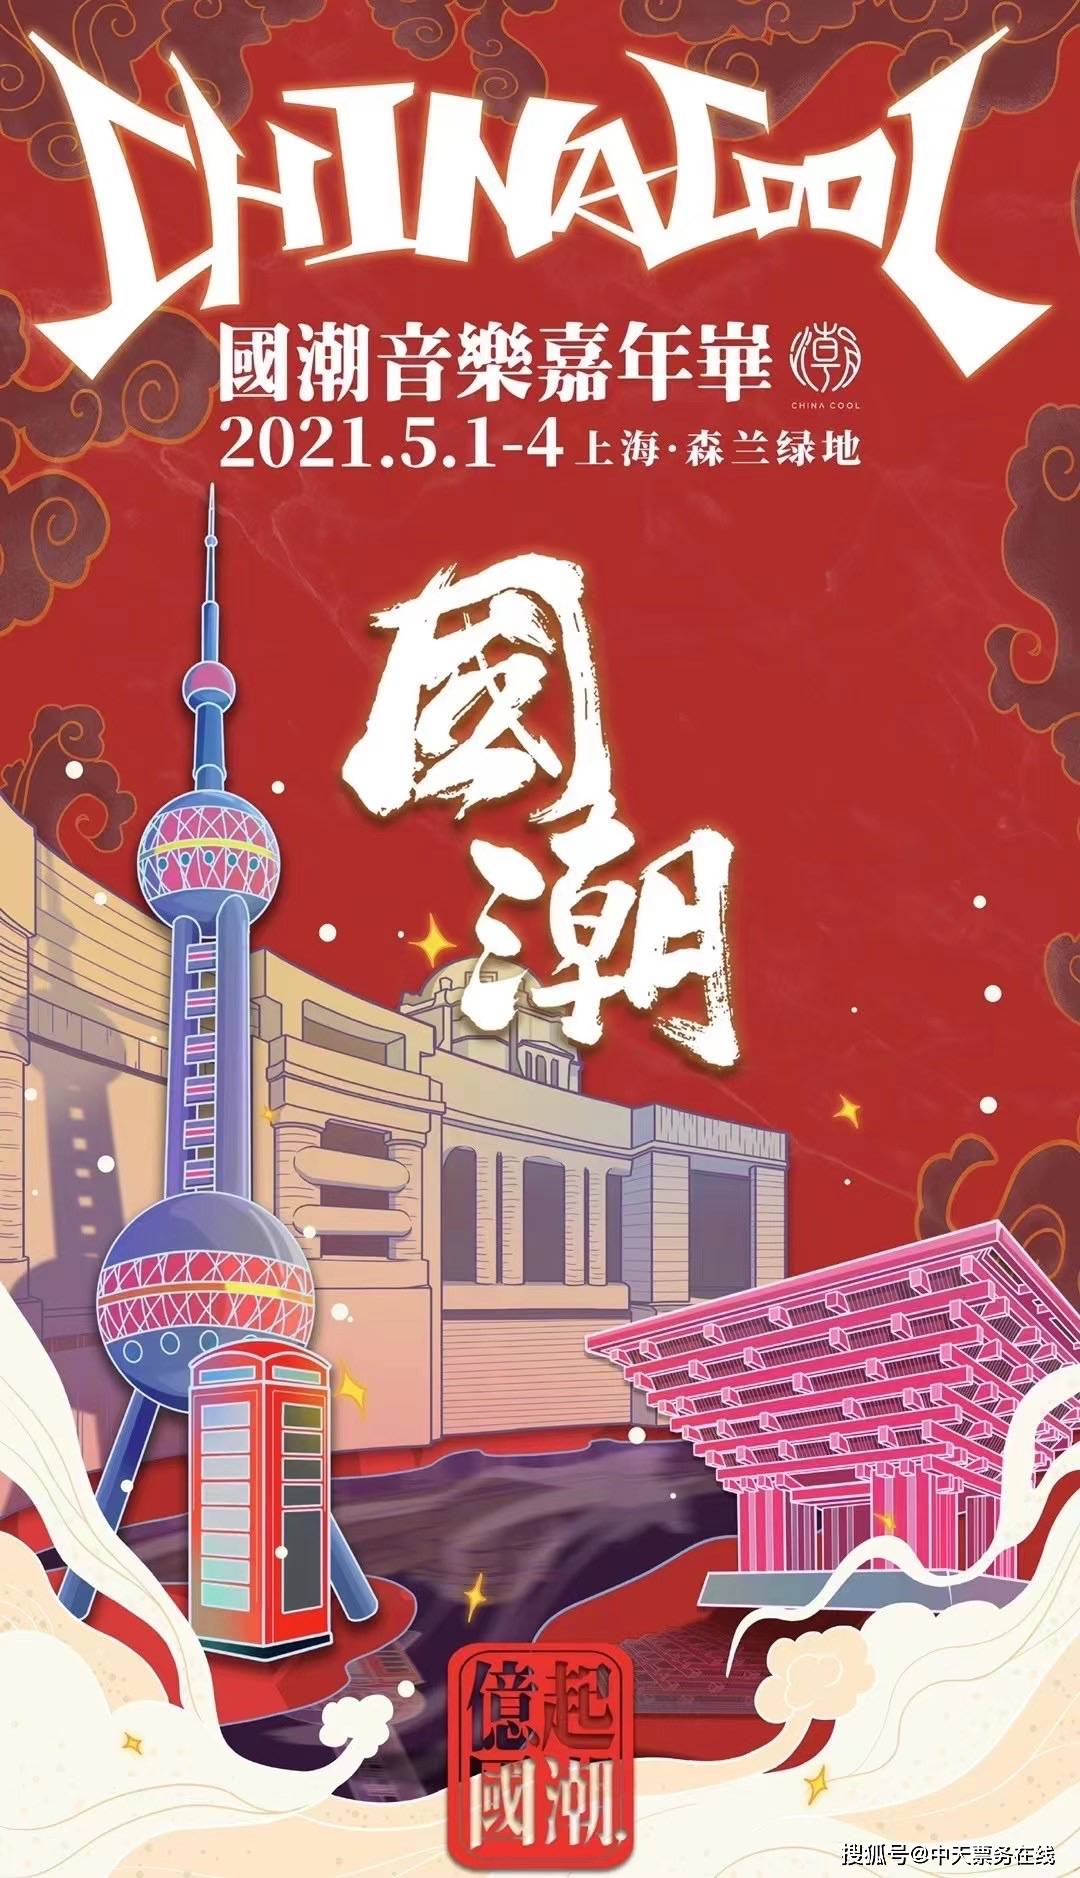 原创2021上海国潮音乐节来了,订票信息 时间 阵容 地点